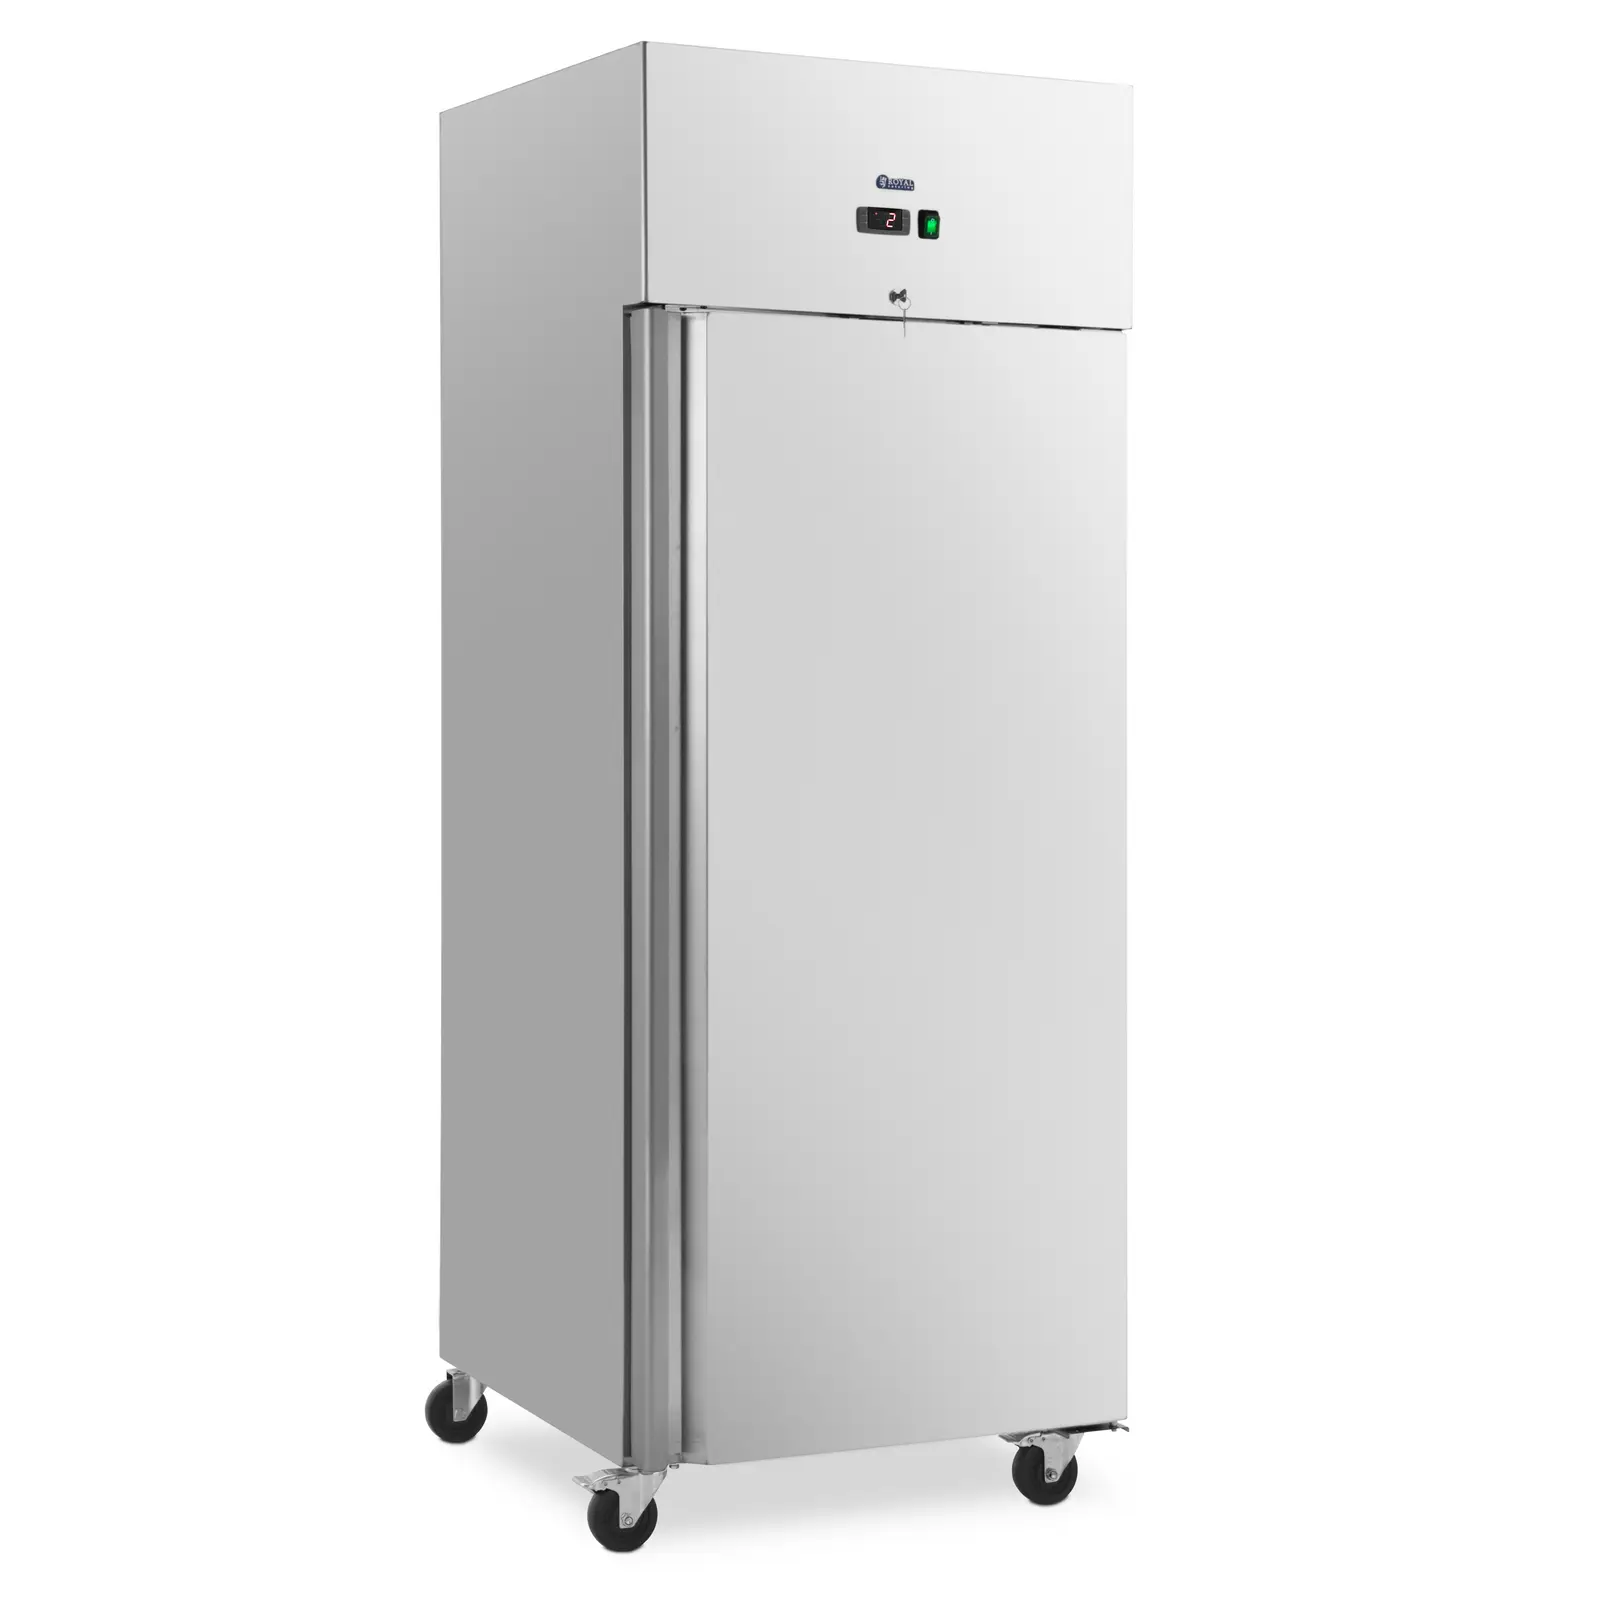 Gastro lednice - 485 l - ušlechtilá ocel - 1 dveře - 4 kolečka - uzamykatelná - Royal Catering